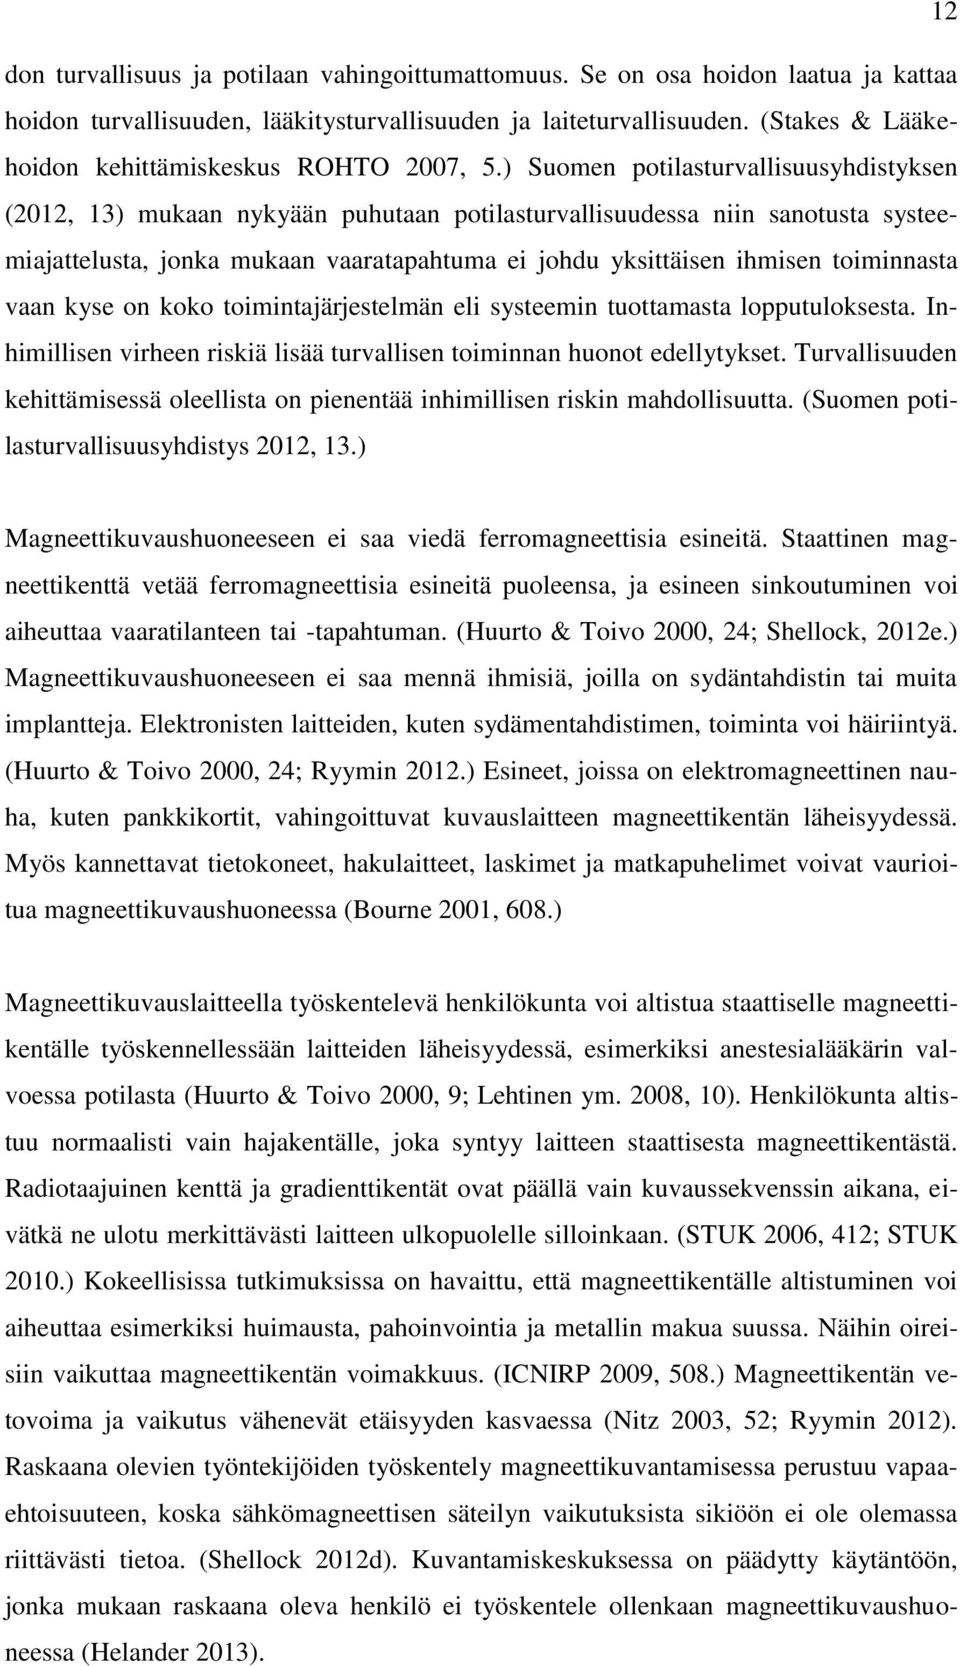 ) Suomen potilasturvallisuusyhdistyksen (2012, 13) mukaan nykyään puhutaan potilasturvallisuudessa niin sanotusta systeemiajattelusta, jonka mukaan vaaratapahtuma ei johdu yksittäisen ihmisen